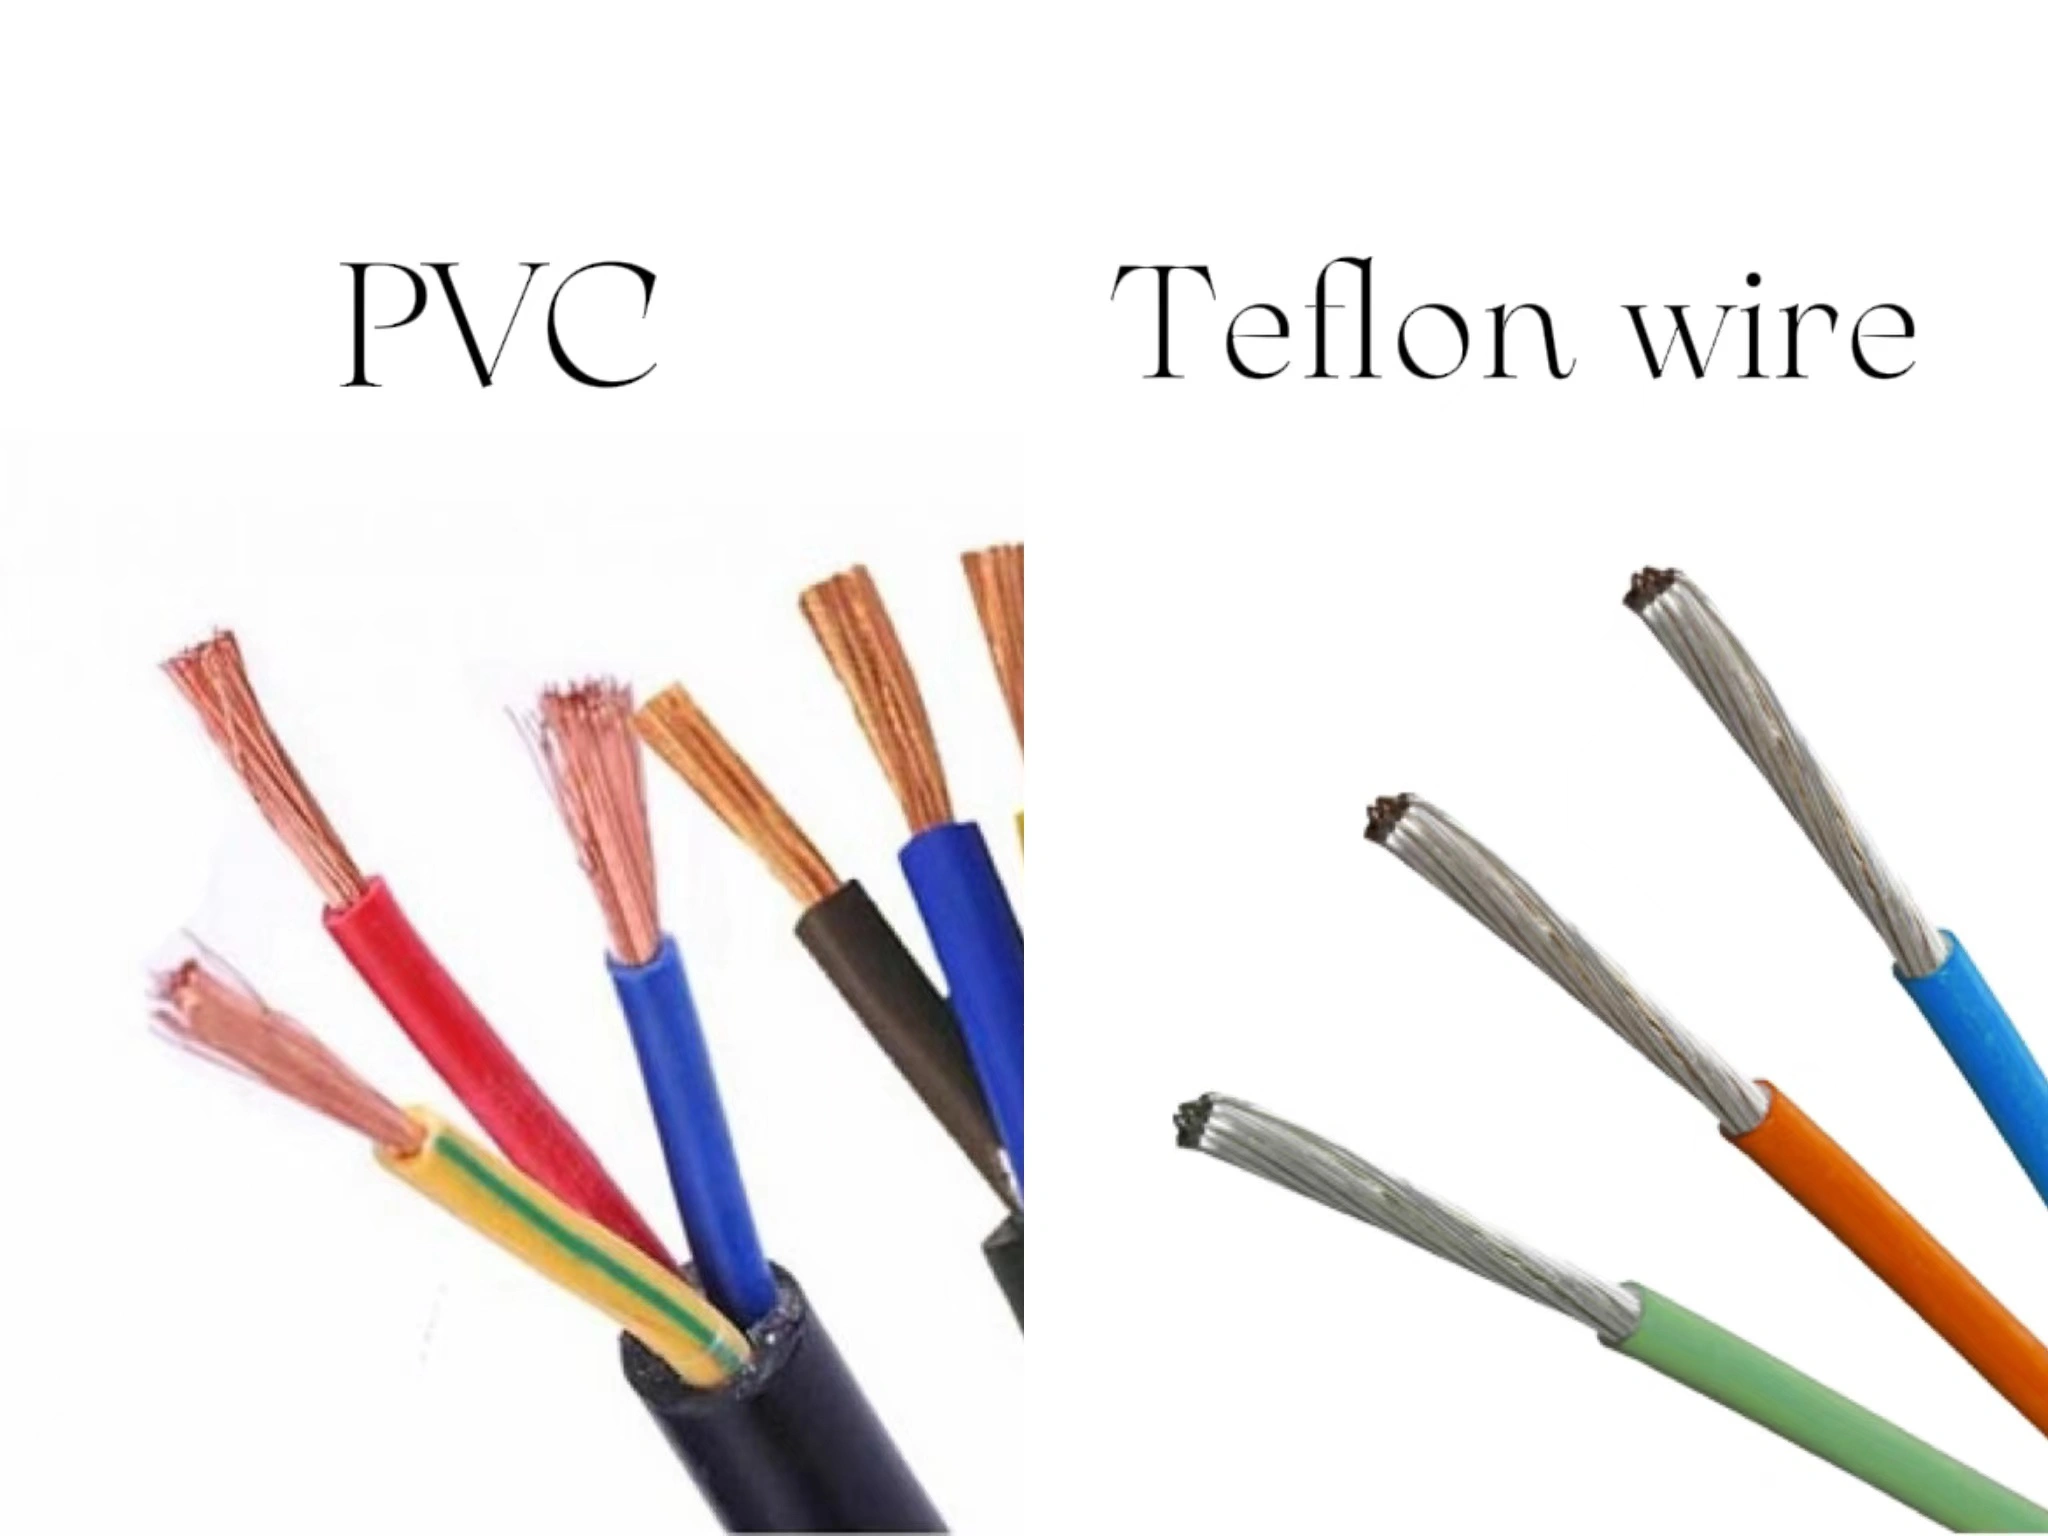 pvc vs teflon wire